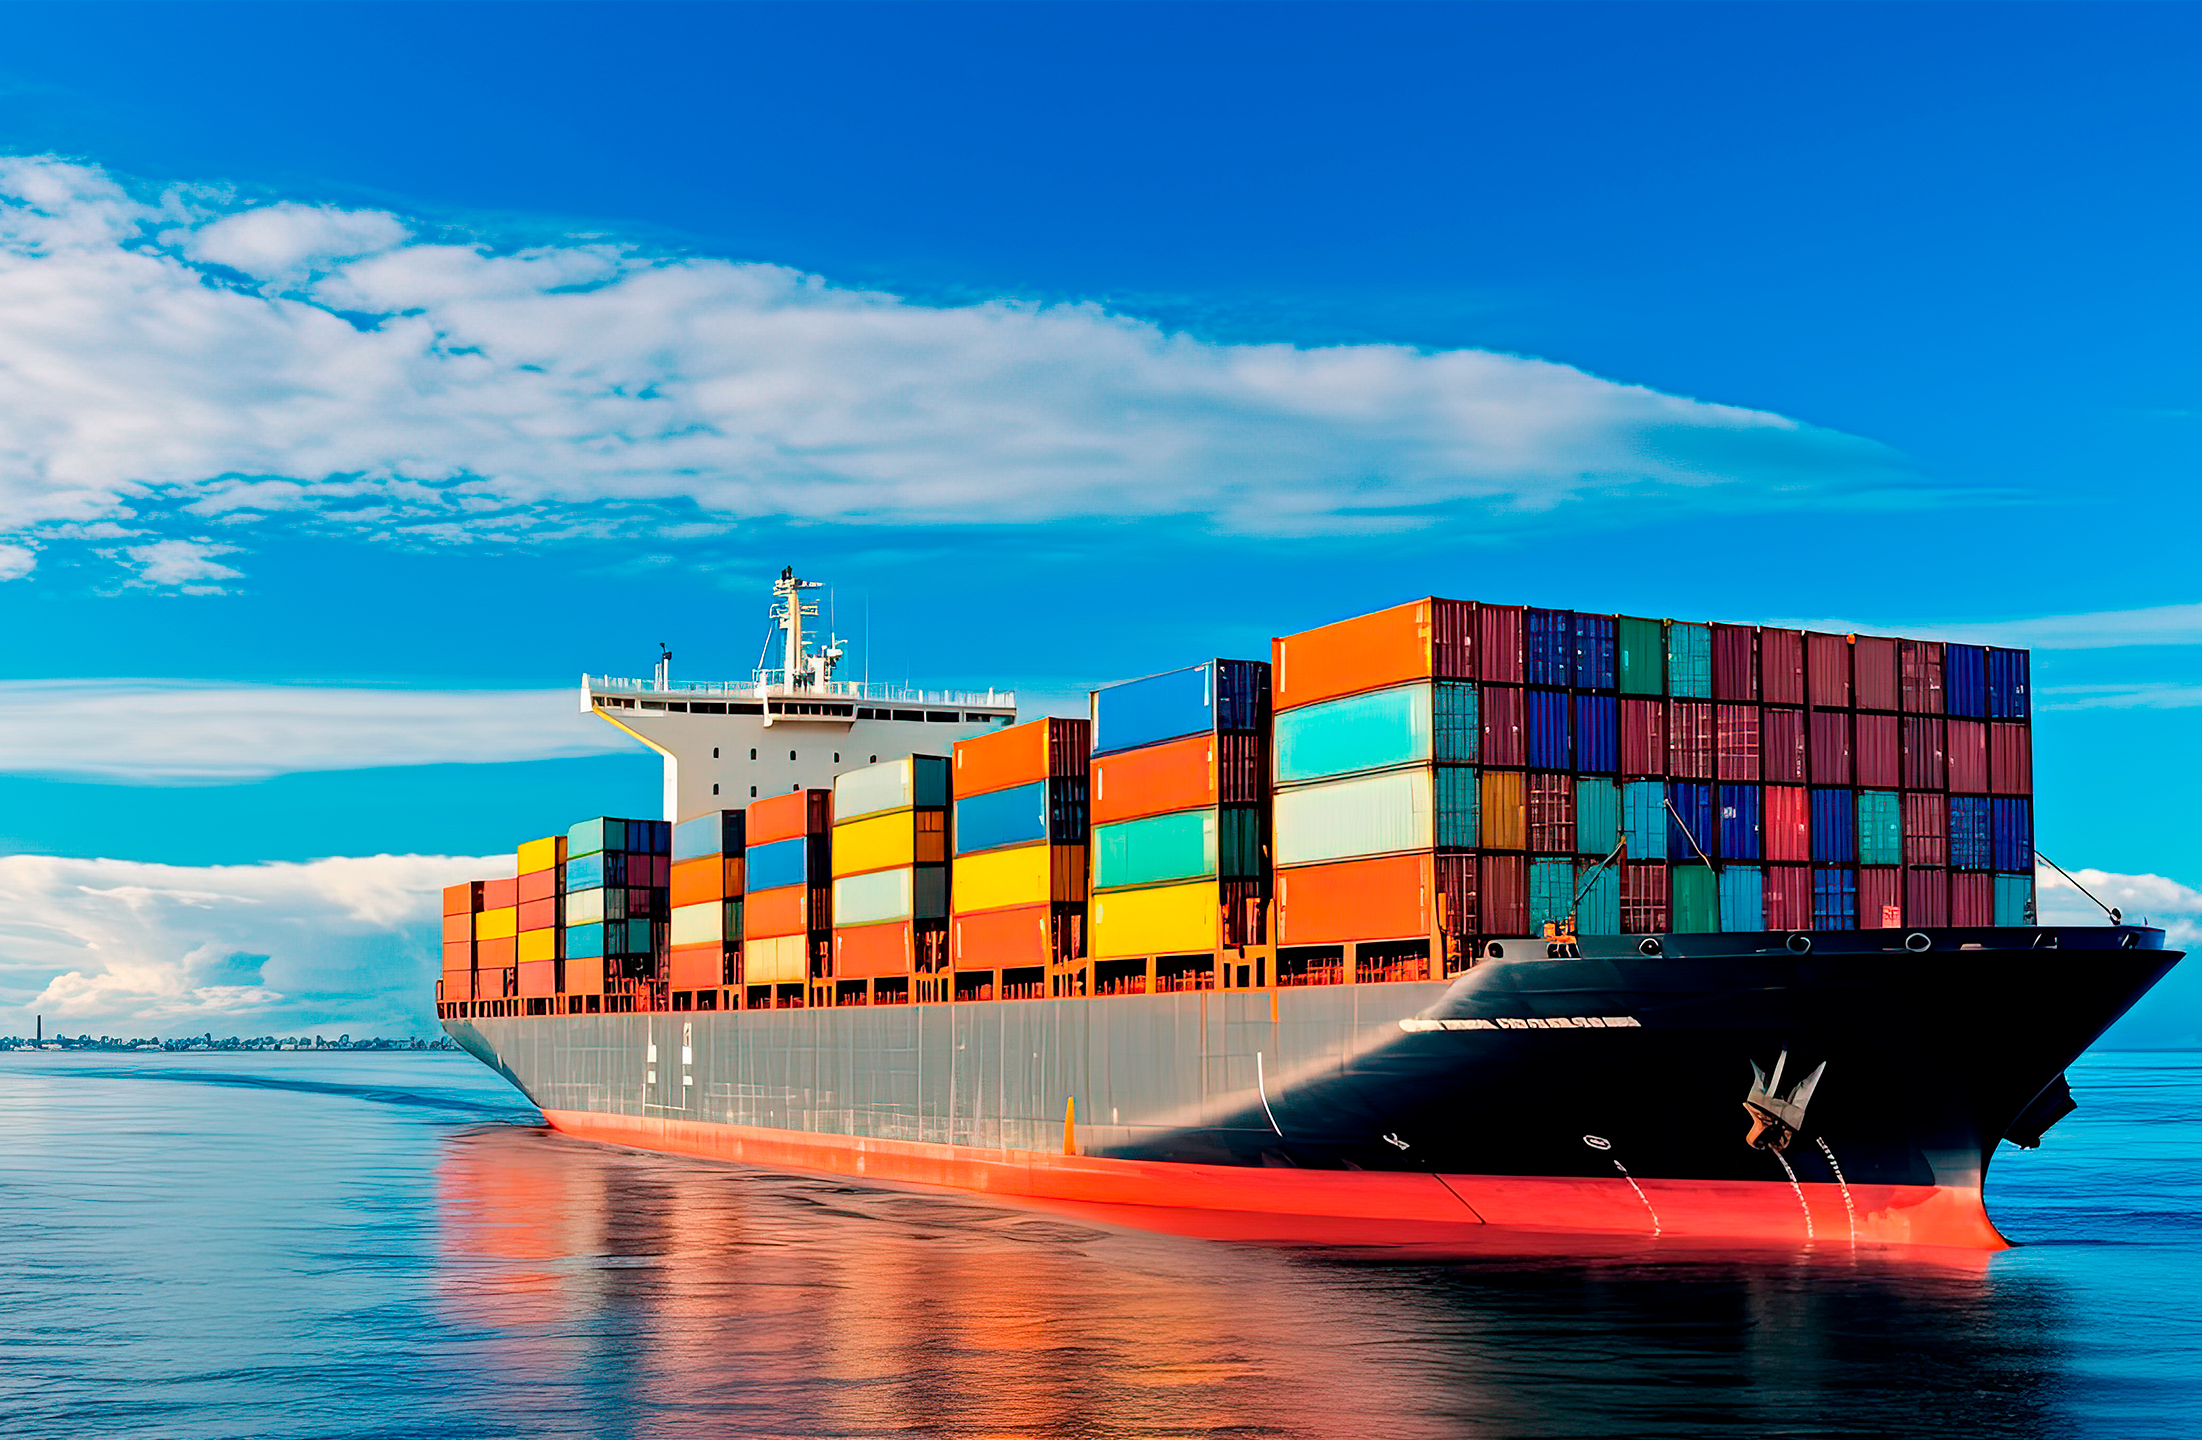 Das Bild zeigt einen Tanker mit Containern beladen auf hoher, tiefblauer See mit blauem Himmel und einem Wolenstreifen am Horizont